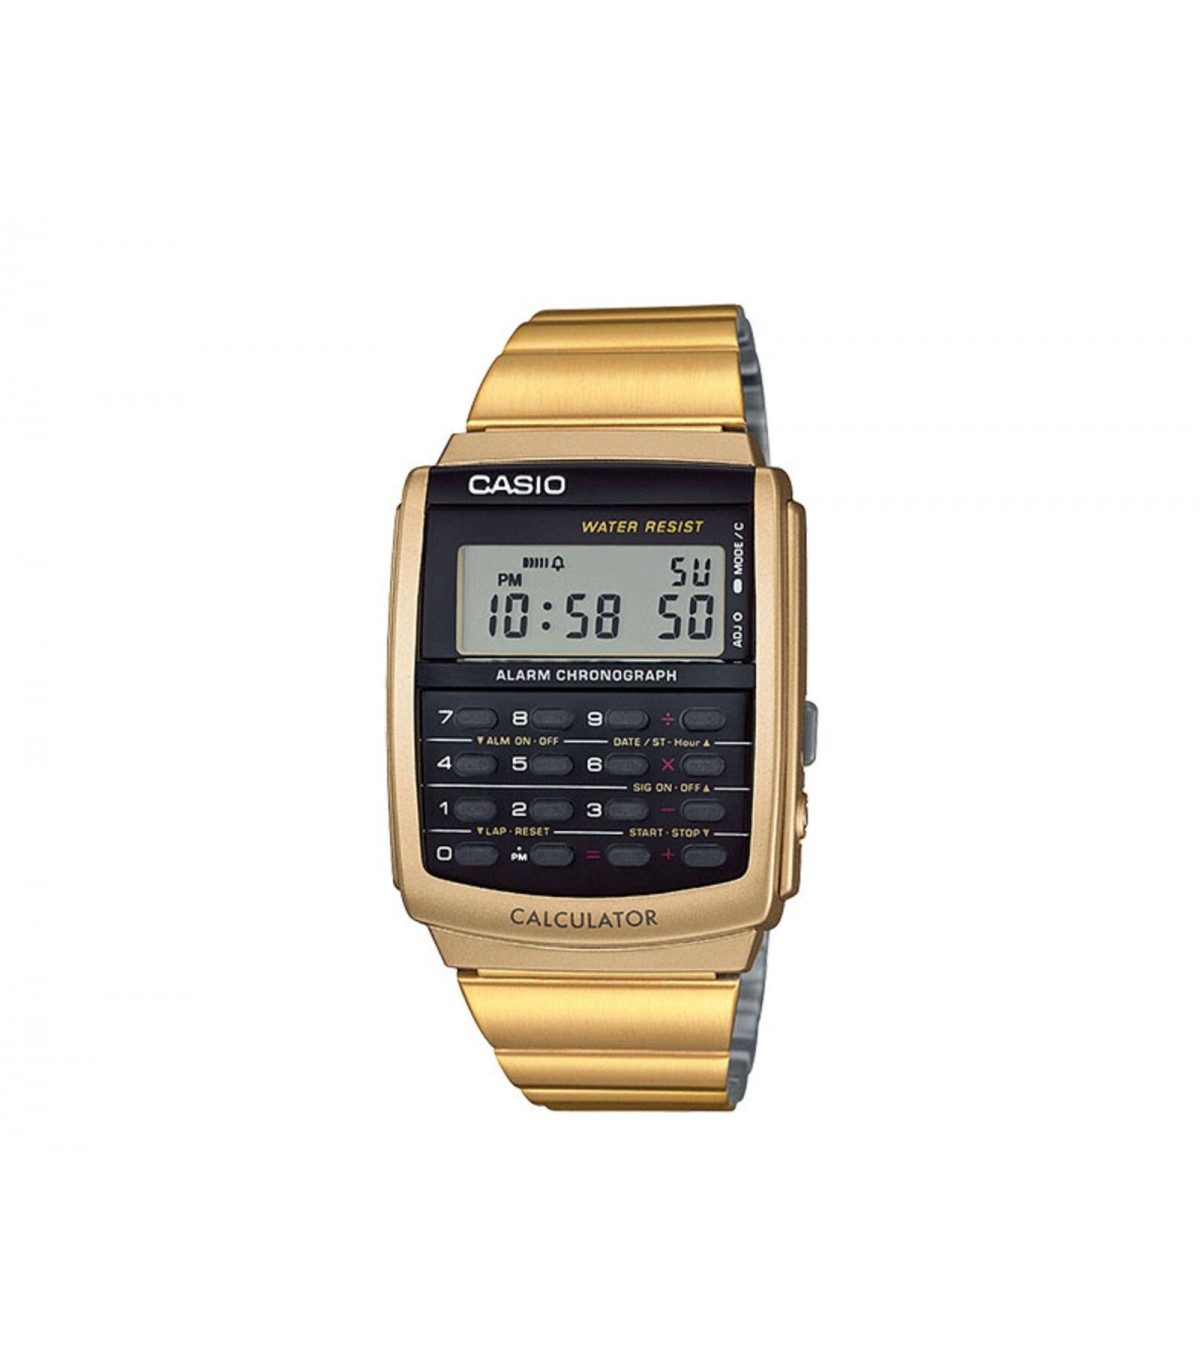 Extremo Alcalde solitario reloj vintage Iconic Casio Calculadora CA506G-9AV Hora Mundial Alarma Hora  Dual Cronómetro